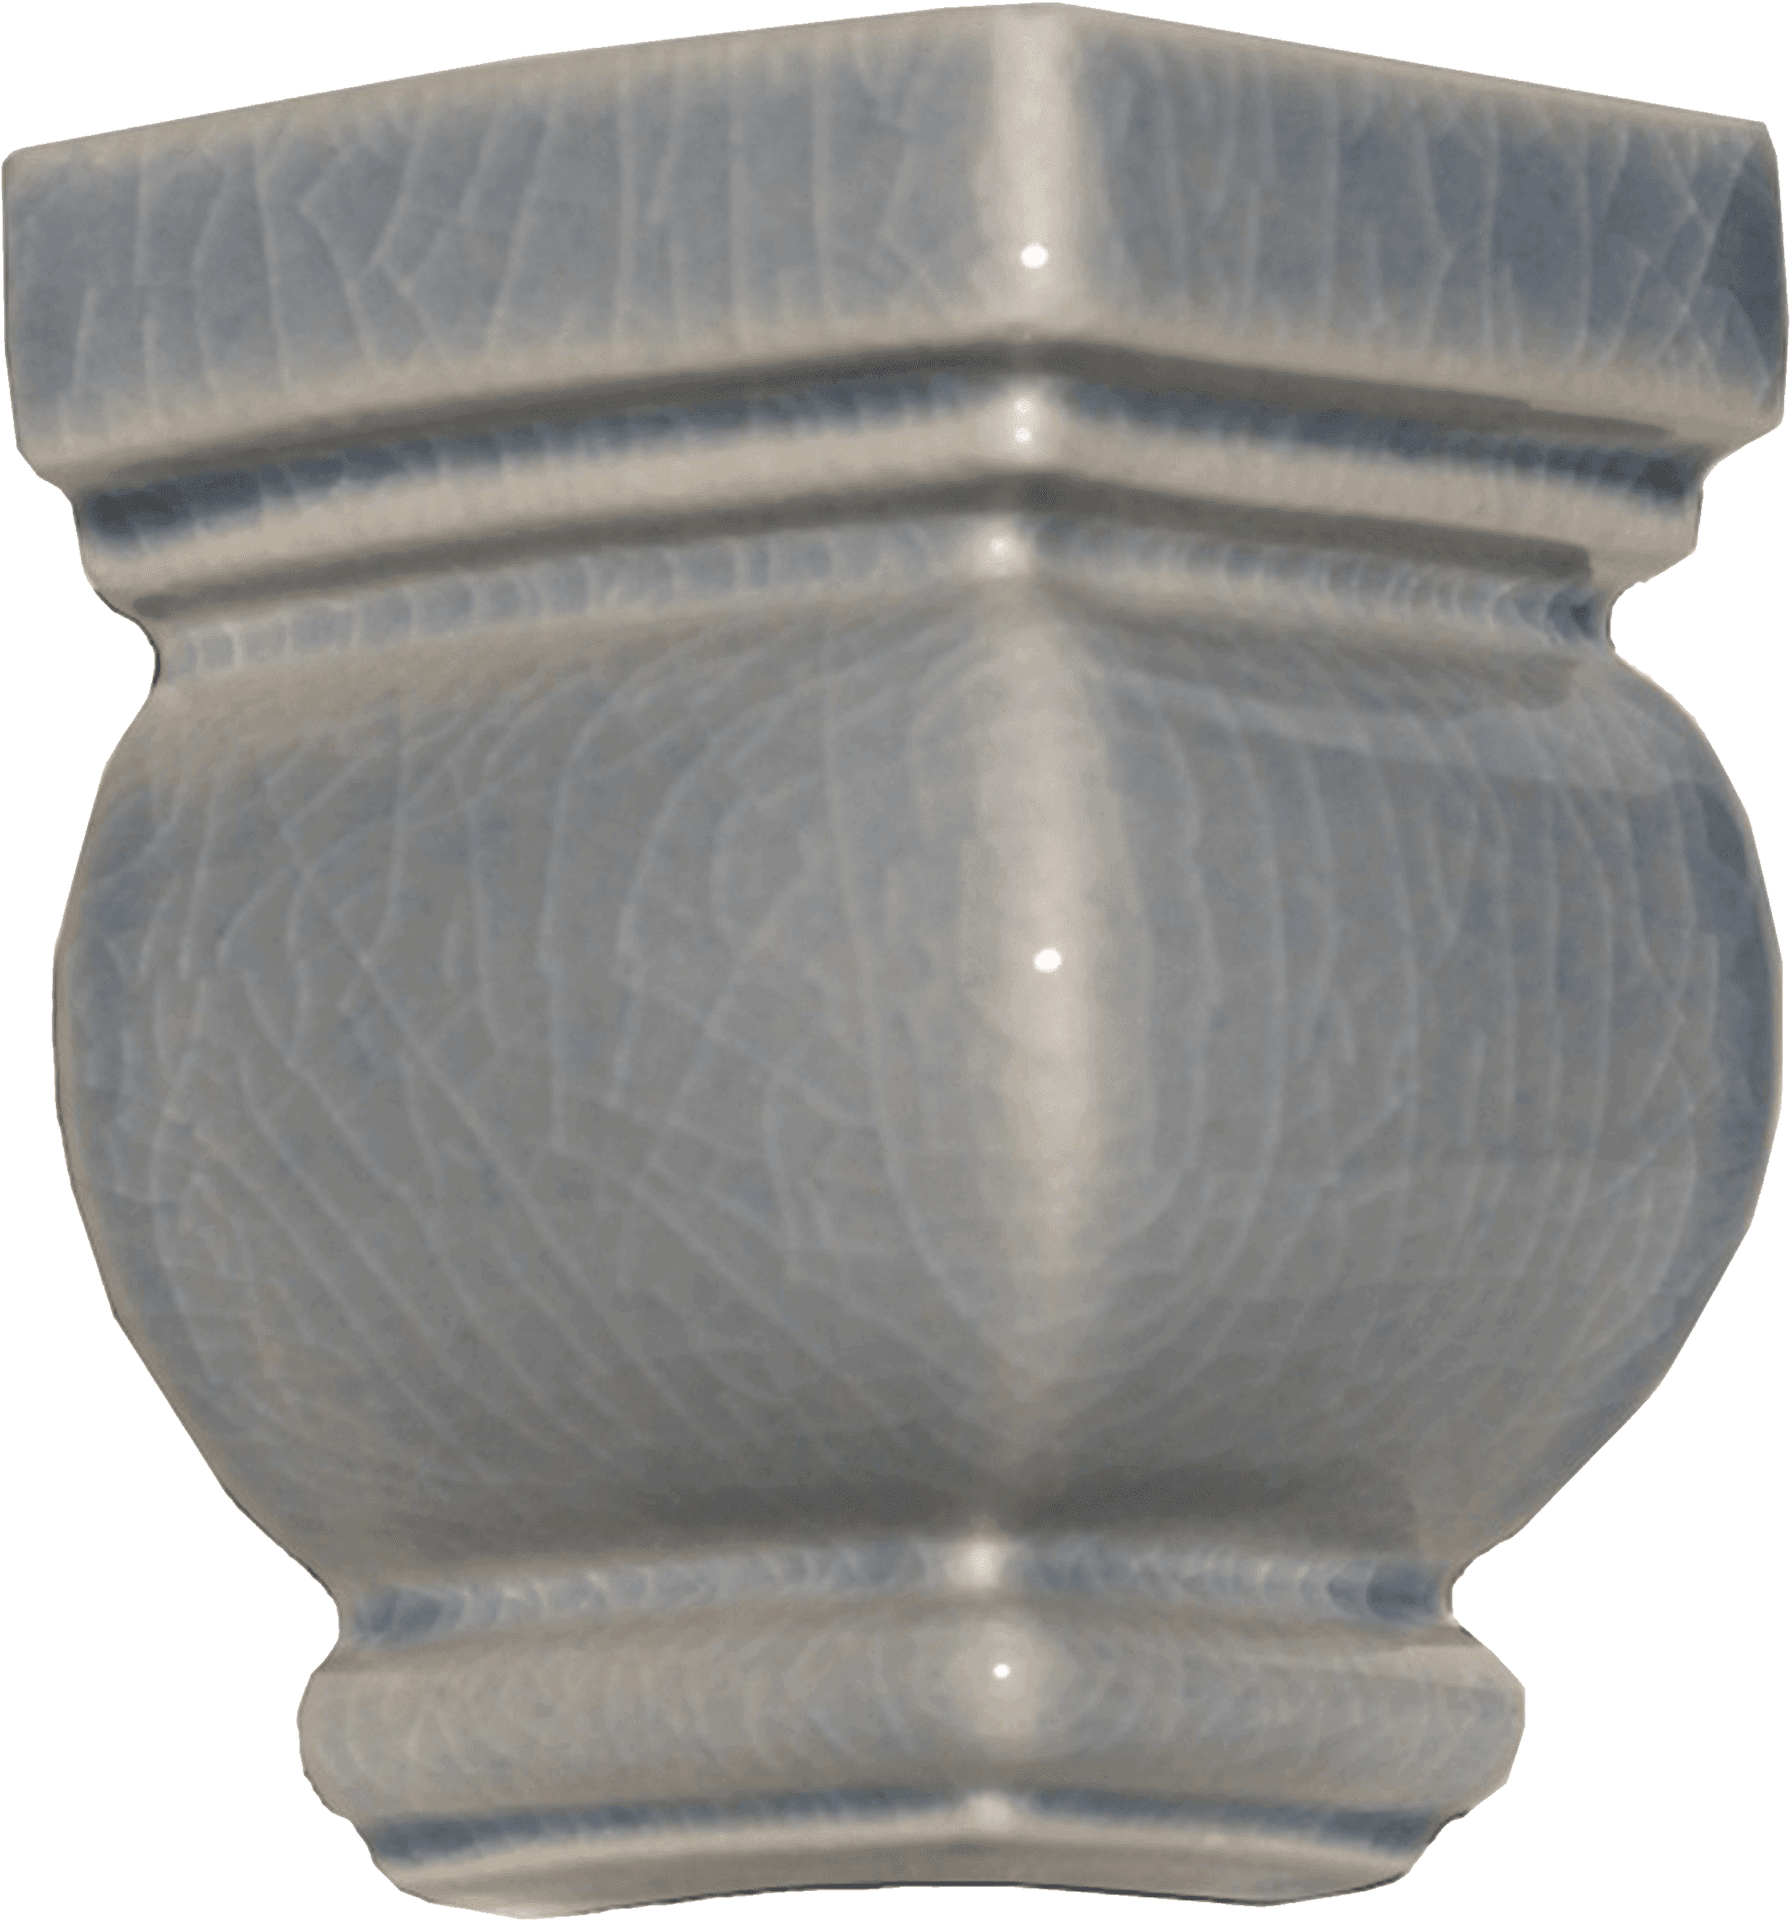 Antique Cracked Celadon Vase PNG image